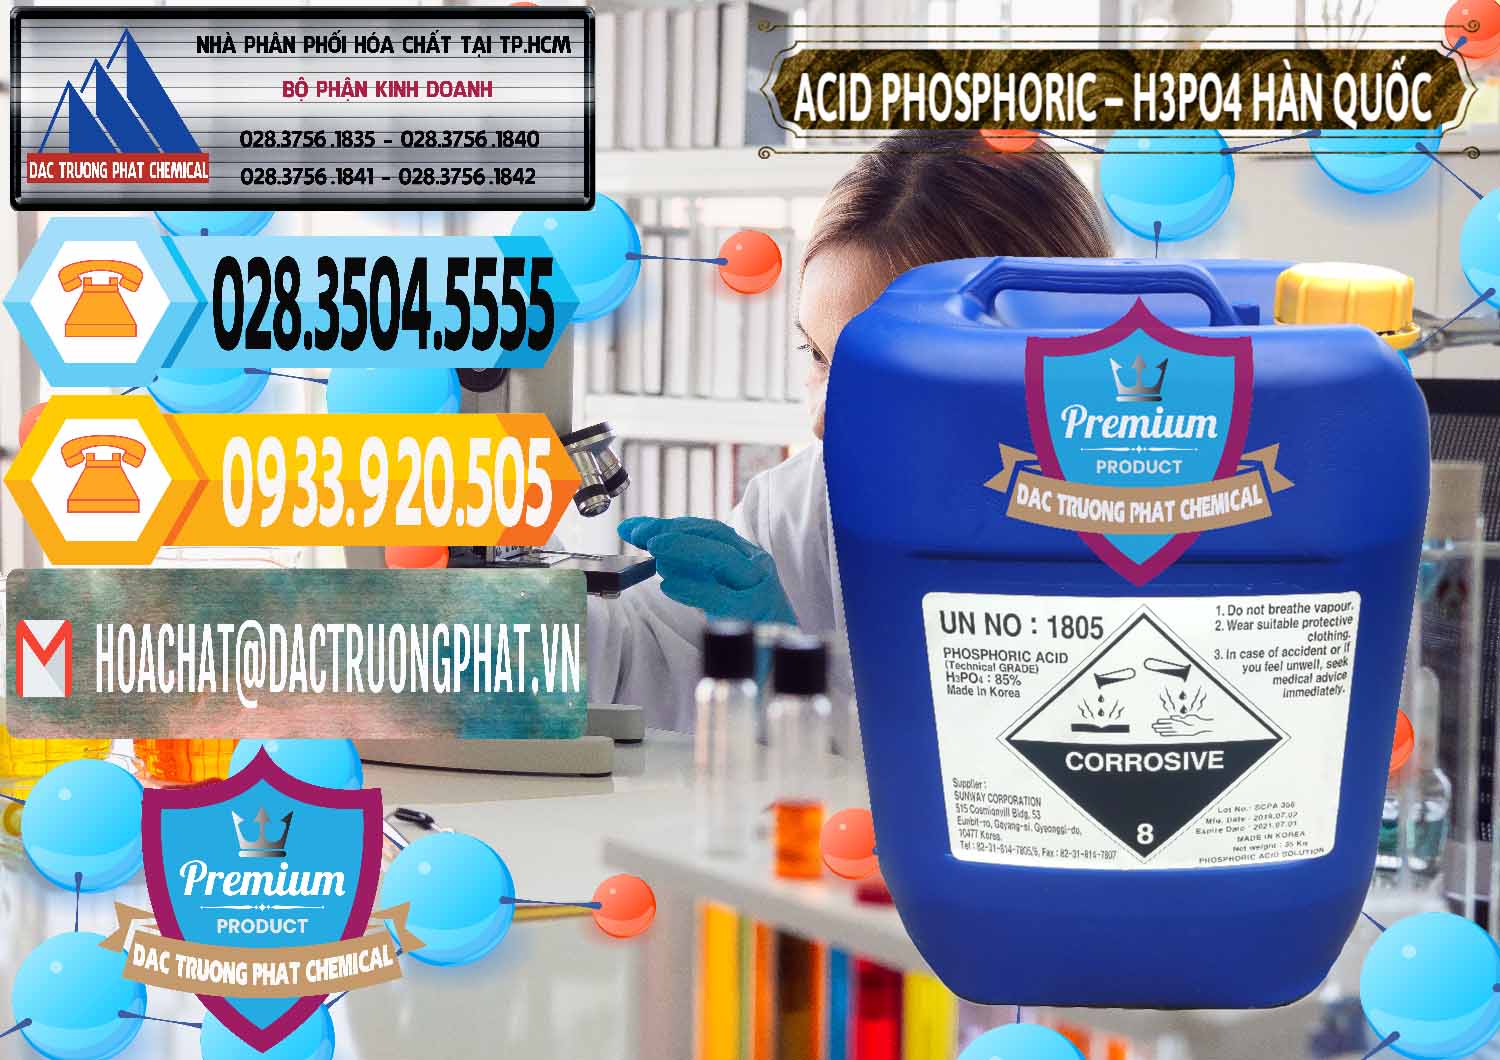 Cty chuyên bán - cung cấp Acid Phosphoric – H3PO4 85% Can Xanh Hàn Quốc Korea - 0016 - Công ty cung cấp _ phân phối hóa chất tại TP.HCM - hoachattayrua.net